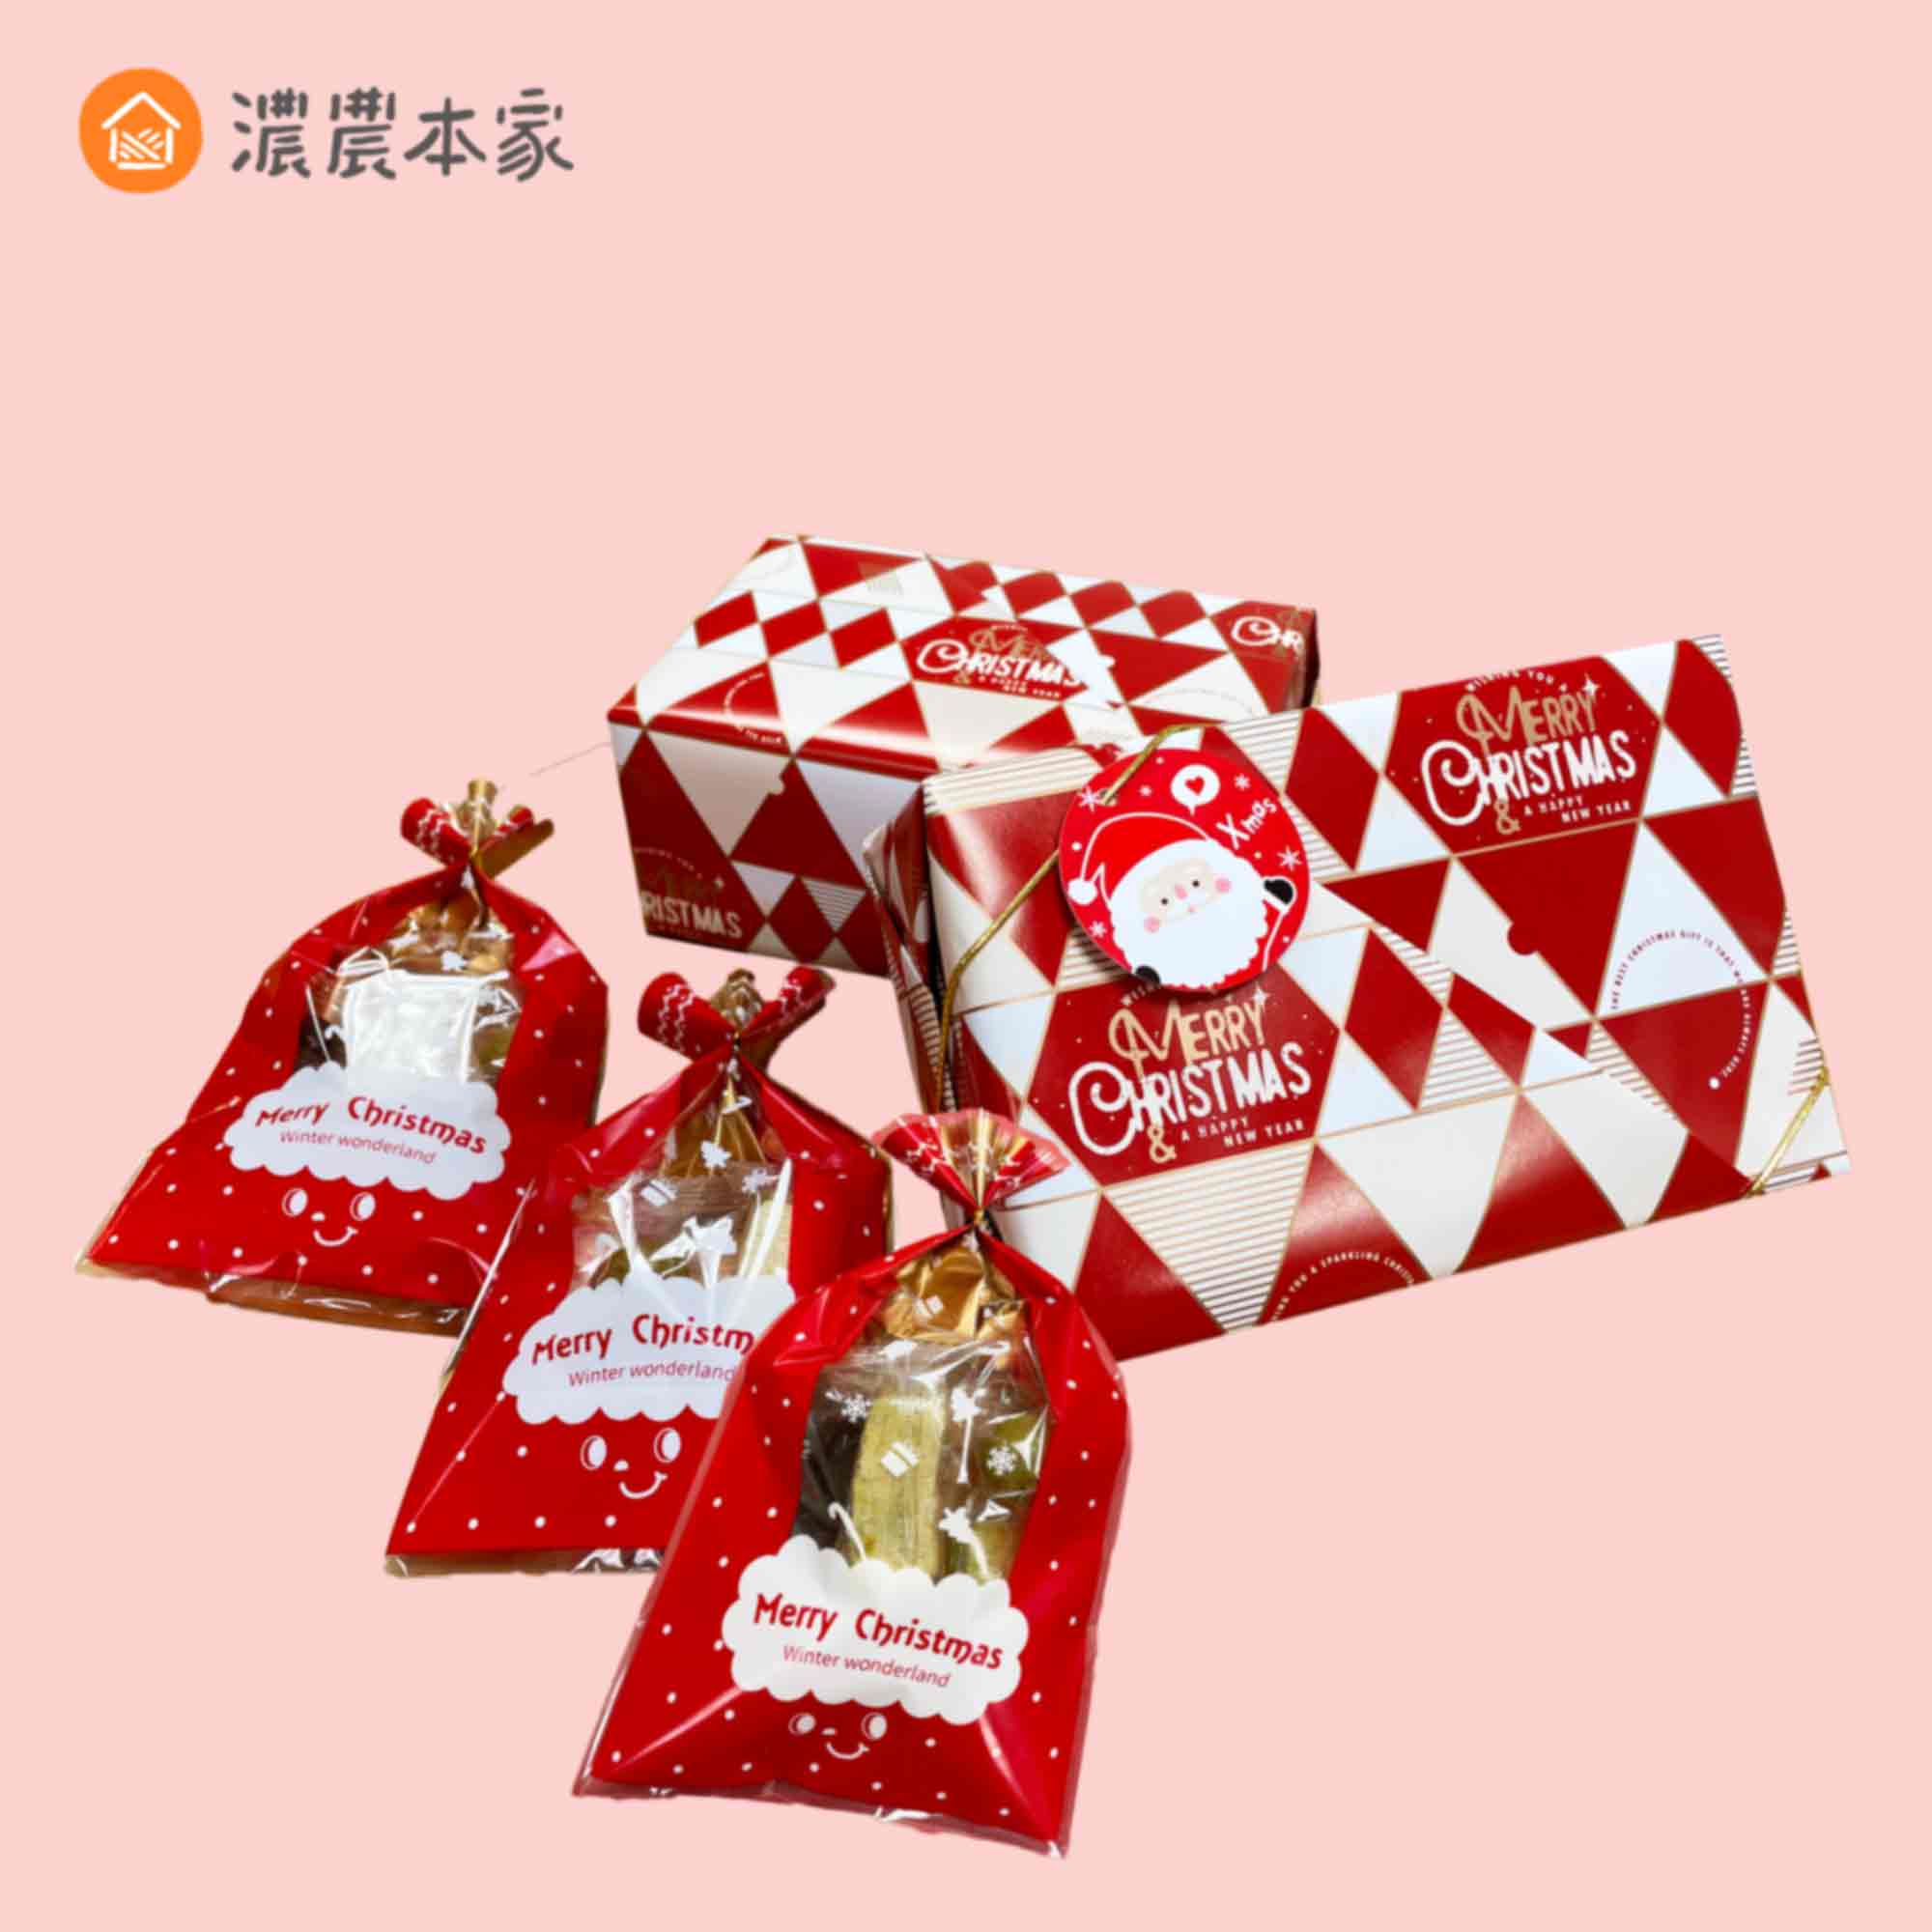 聖誕節交換禮物推薦台灣茶點